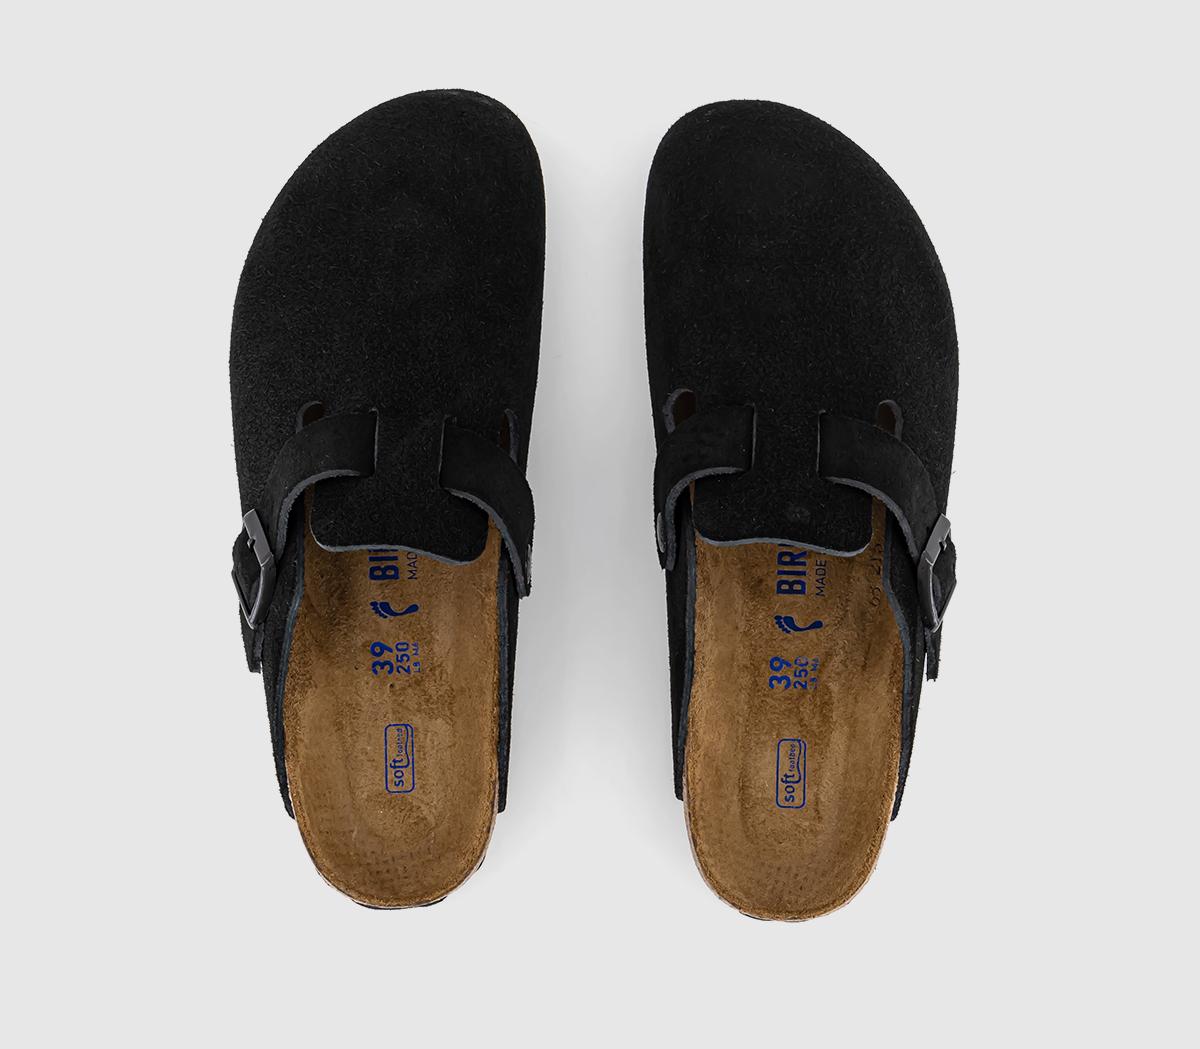 BIRKENSTOCK Boston Clogs Black - Flat Shoes for Women